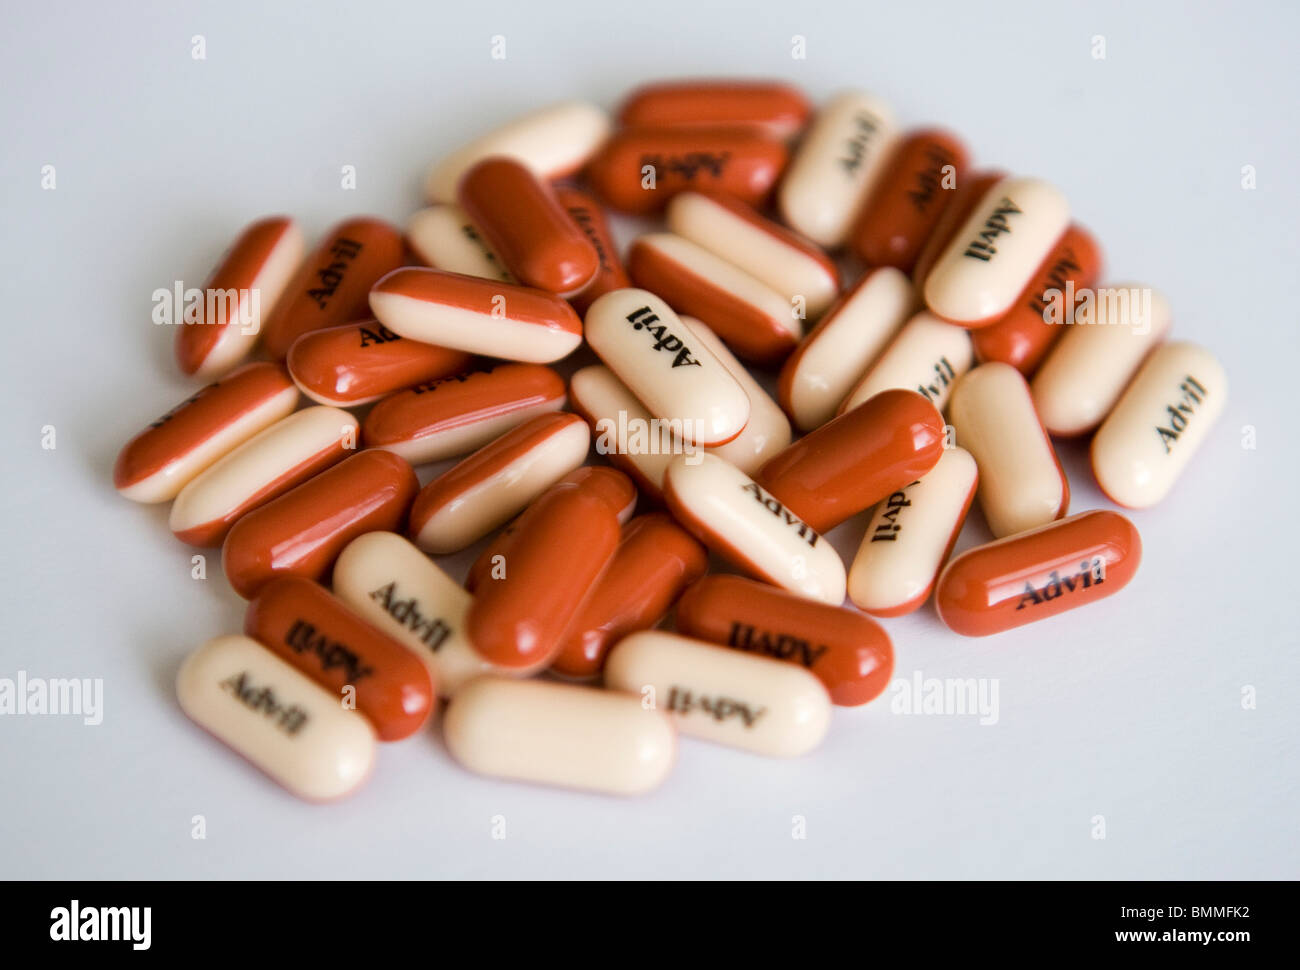 Ibuprofen-Verpackung und Pillen. Stockfoto